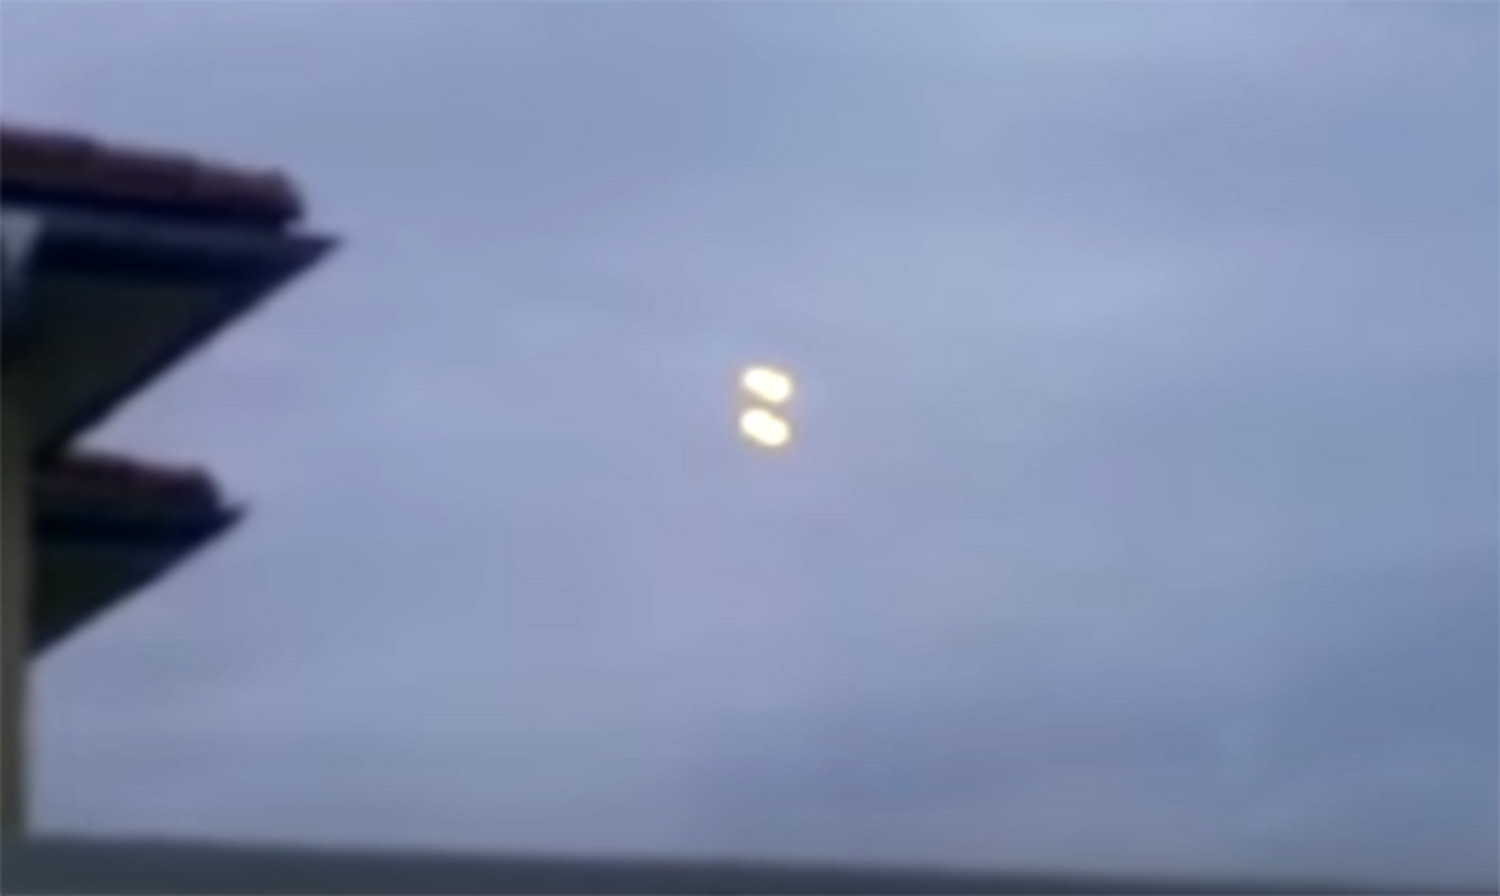 Βίντεο ακτοφυλακής ΗΠΑ: Δεκατρία φωτεινά ιπτάμενα αντικείμενα ακολουθούν ταχύπλοο σκάφος